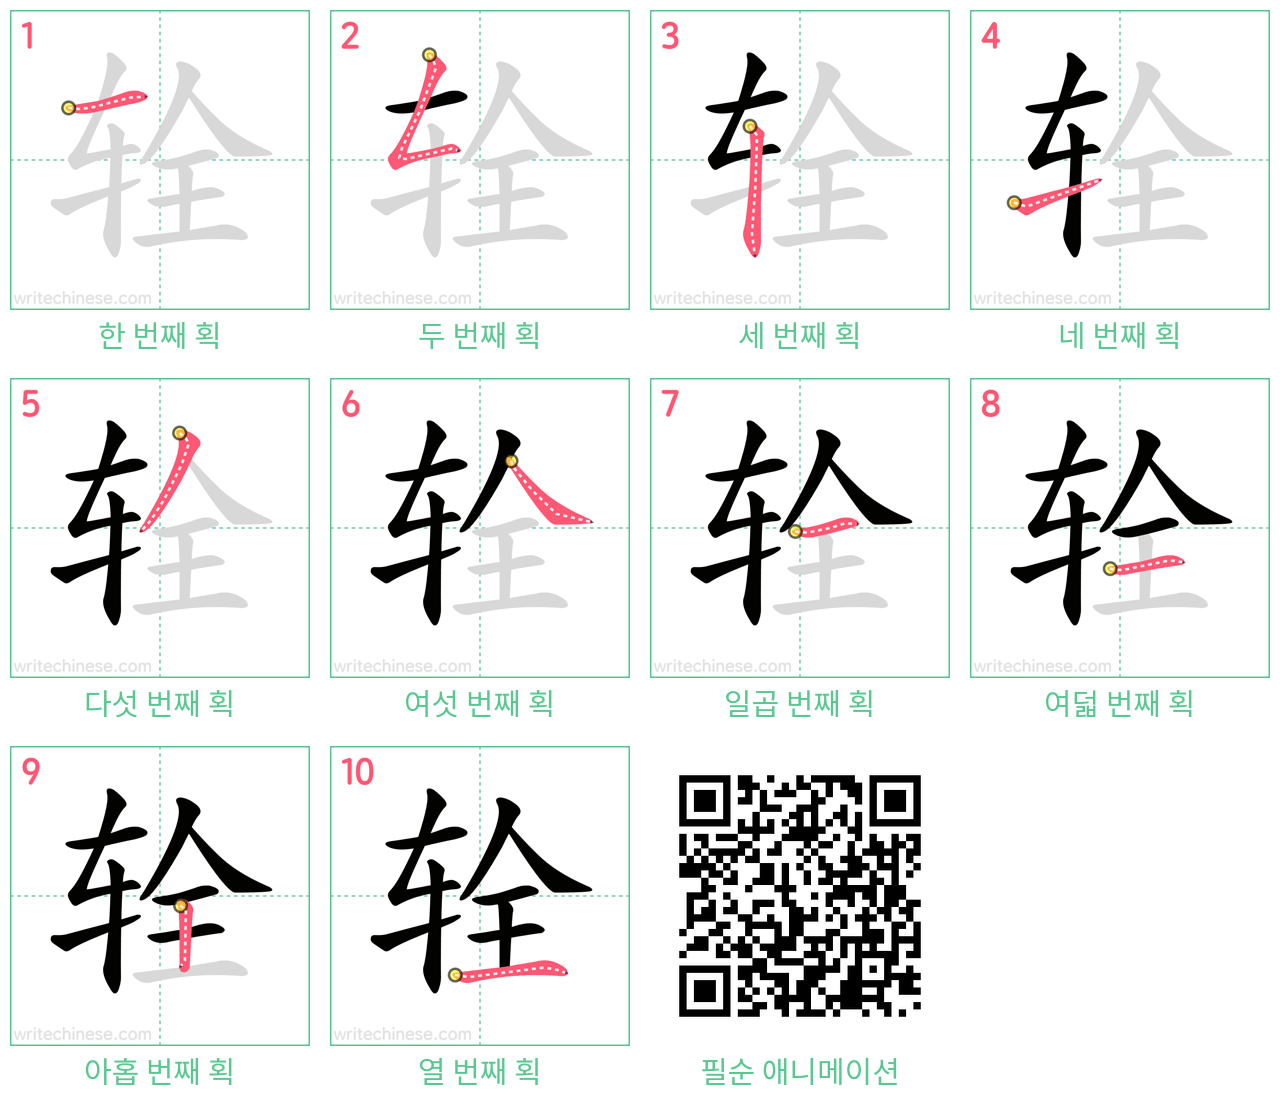 辁 step-by-step stroke order diagrams